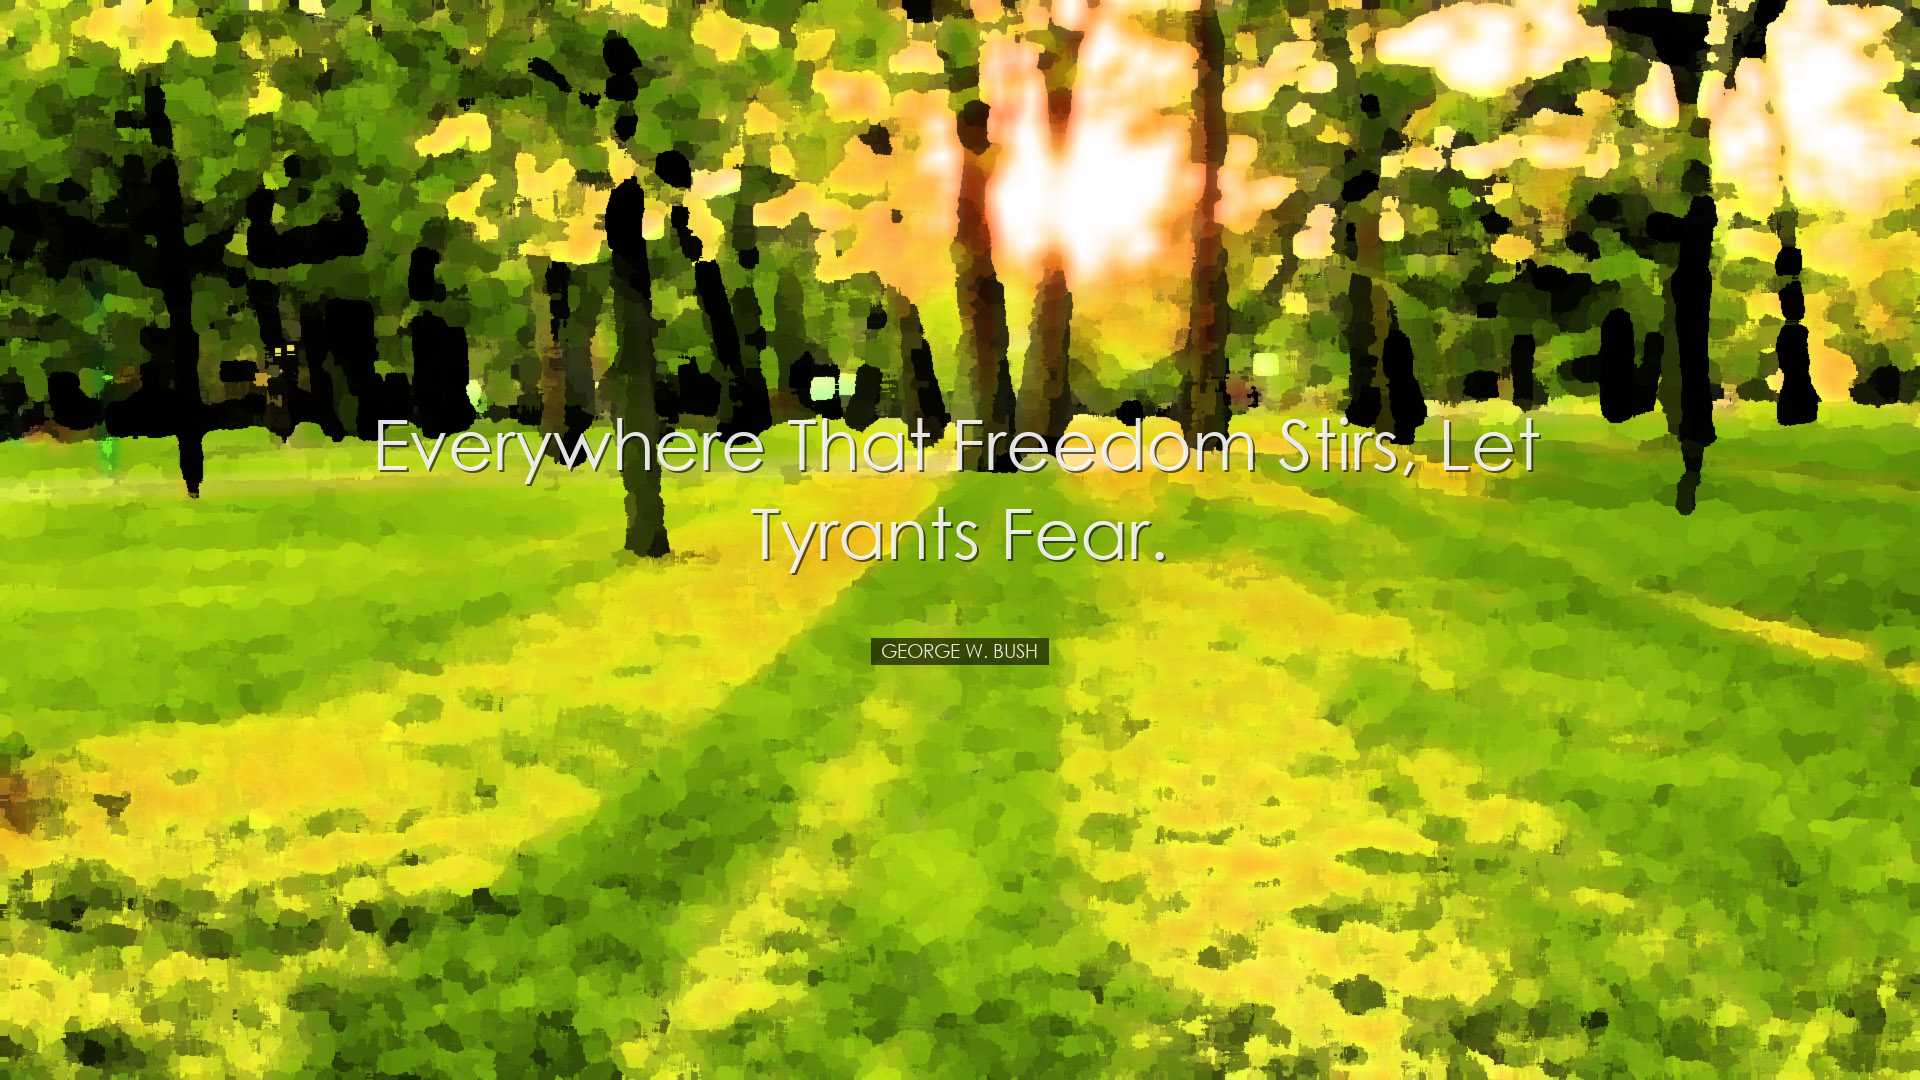 Everywhere that freedom stirs, let tyrants fear. - George W. Bush